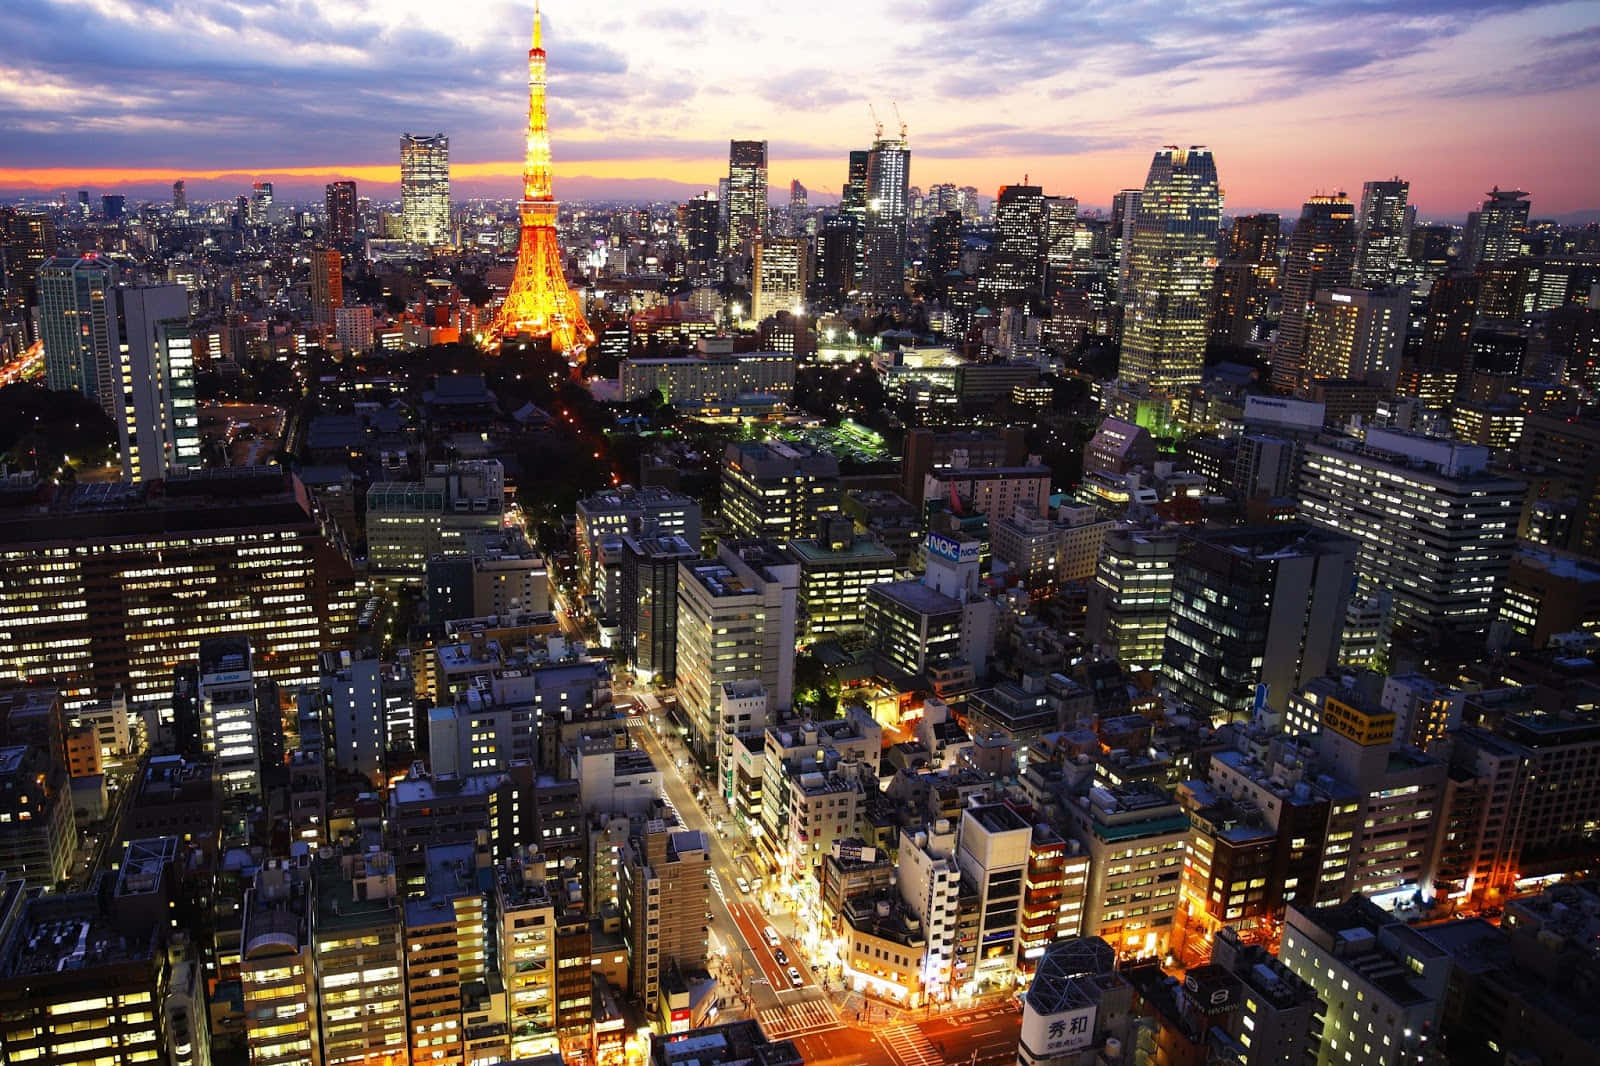 Dieunglaubliche Stadtsilhouette Von Tokio, Japan Beeindruckt Alle, Die Sie Besuchen.